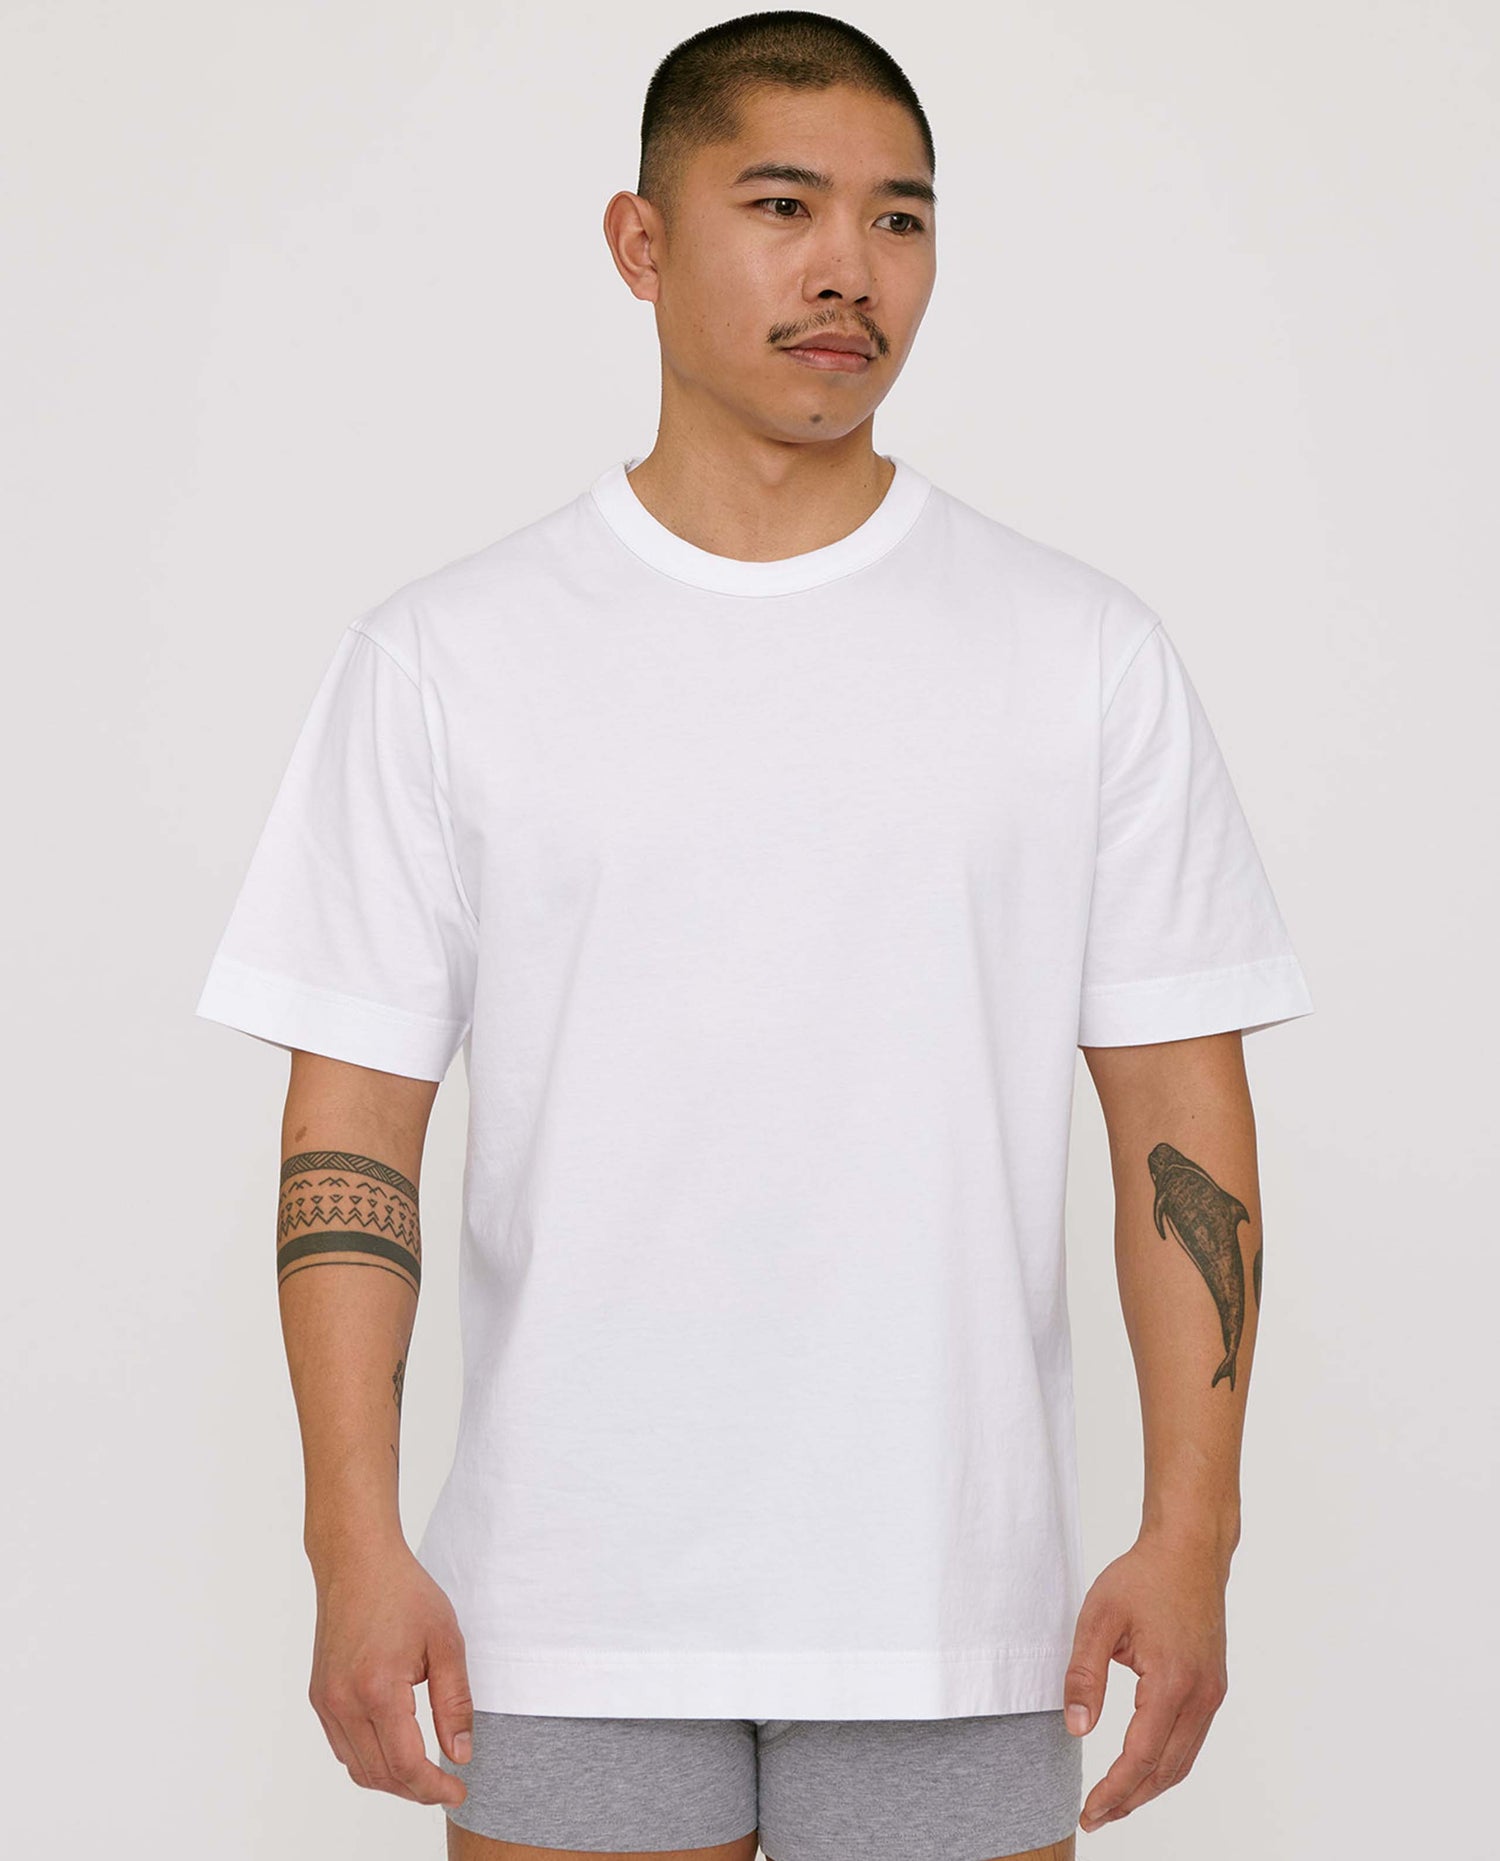 Tee-Shirt Homme Coton Biologique Blanc